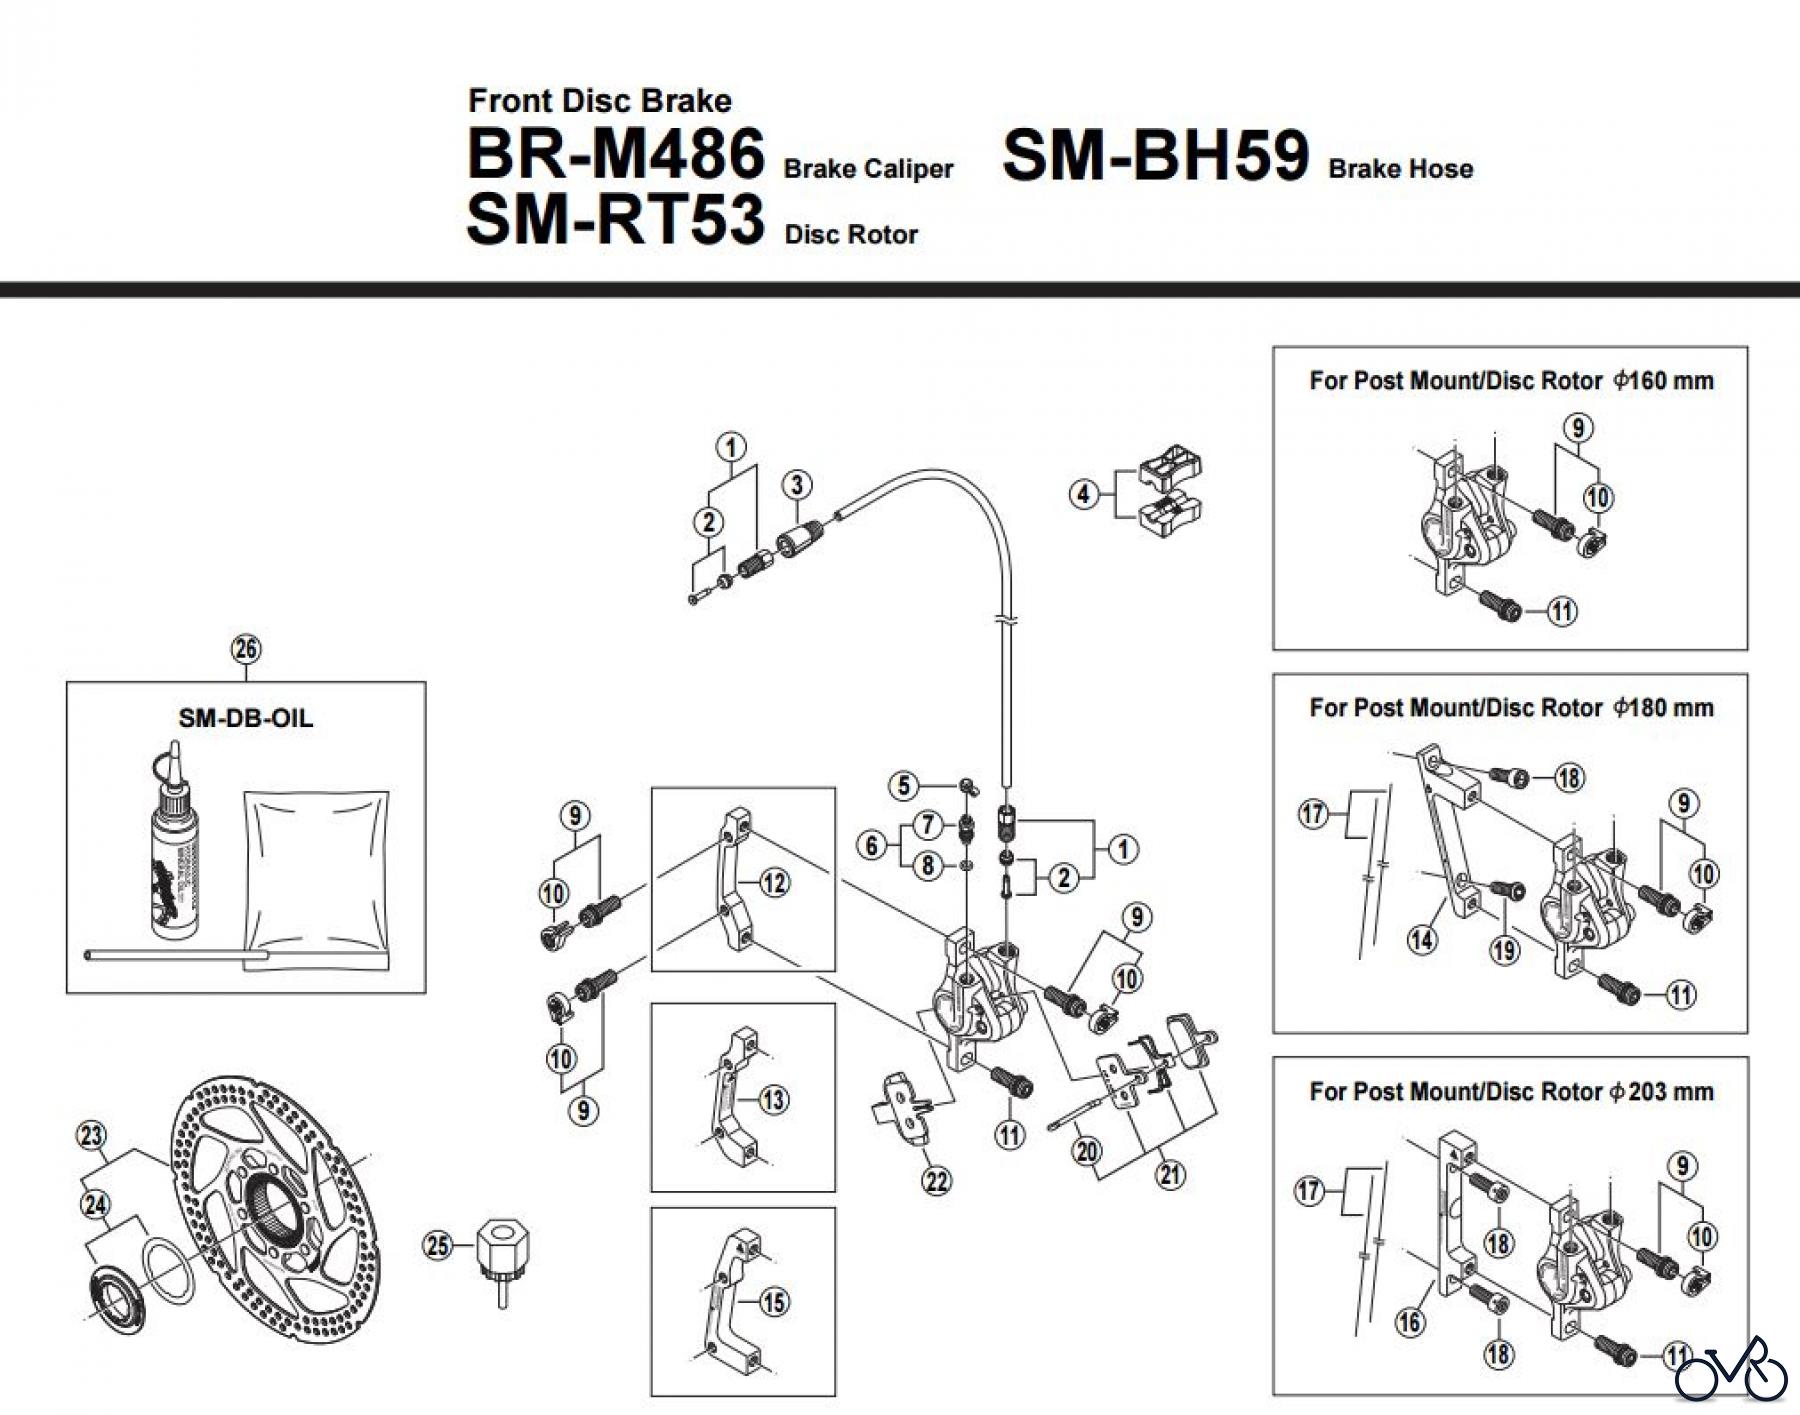  Shimano BR Brake - Bremse BR-M486-F-2883 Front Disc Brake